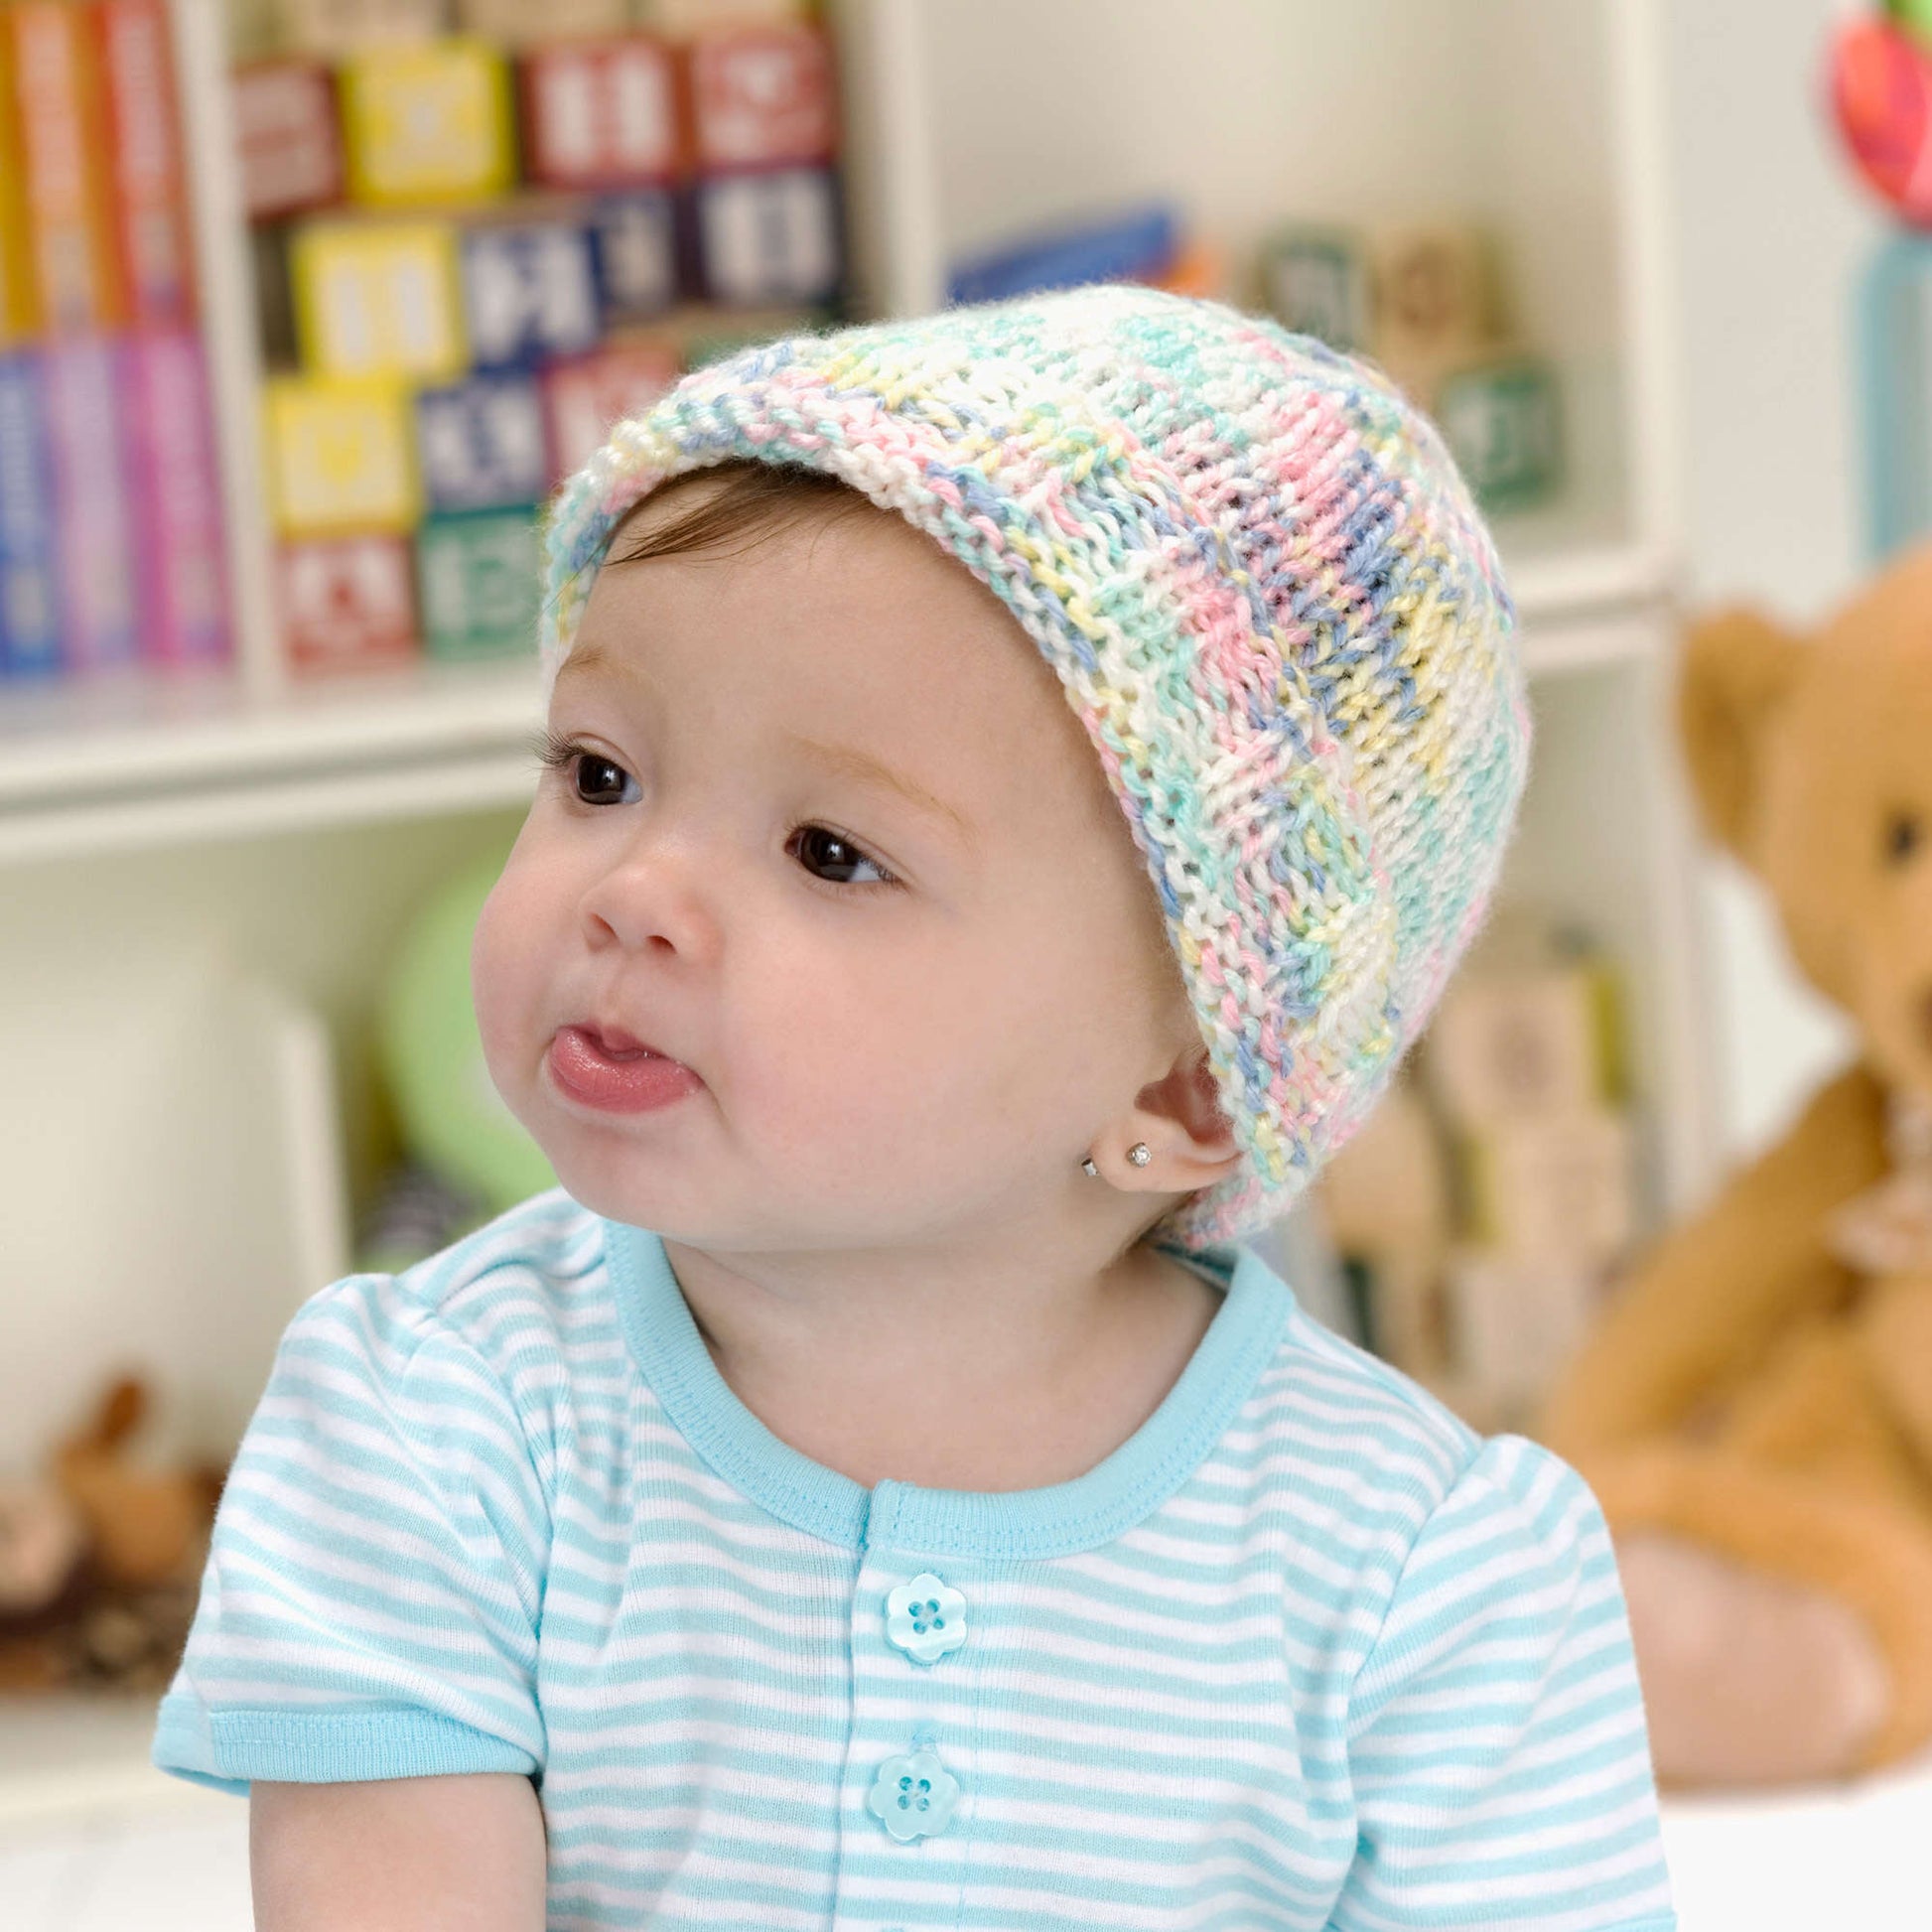 Beginner Knitting Kit for Baby Bobble Hat / Easy Baby Hat / Baby